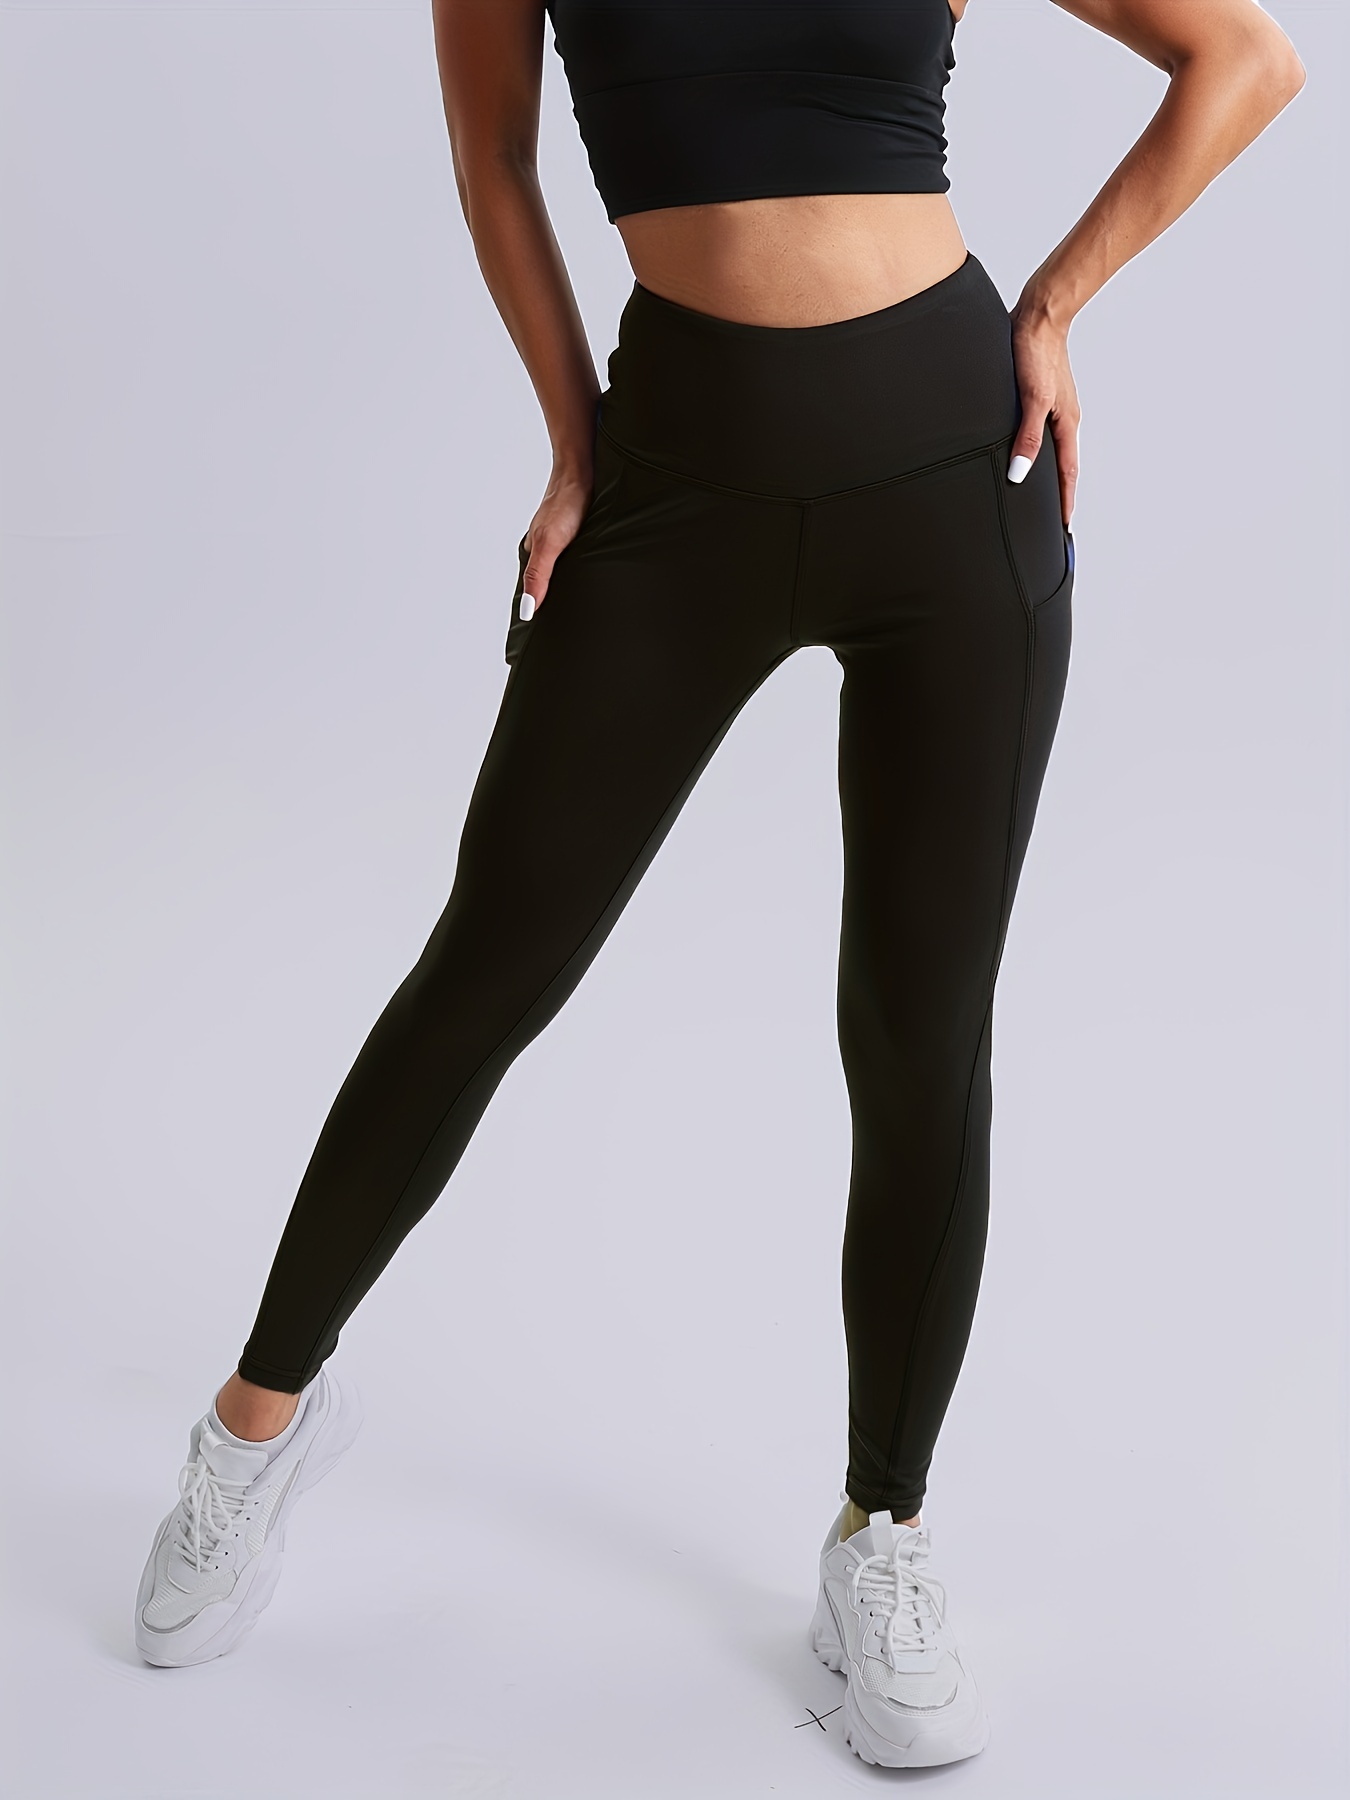 Gym bunny Scrunch leggings active wear - Black – Shape Wear Shop